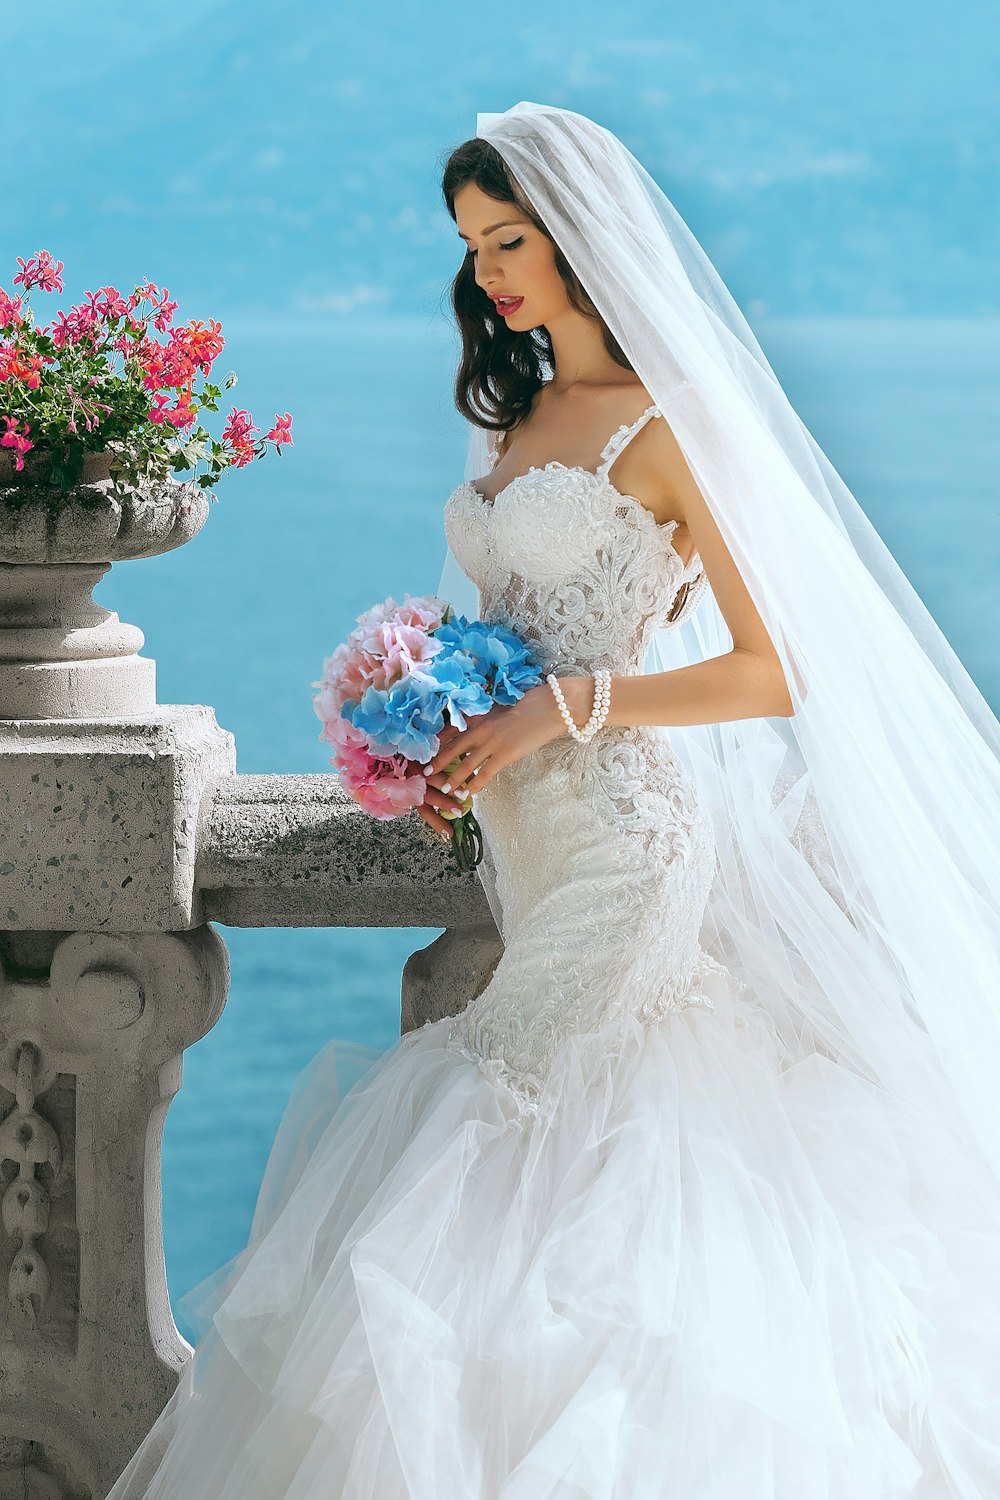 mulher no vestido de noiva enquanto segura a flor durante o dia